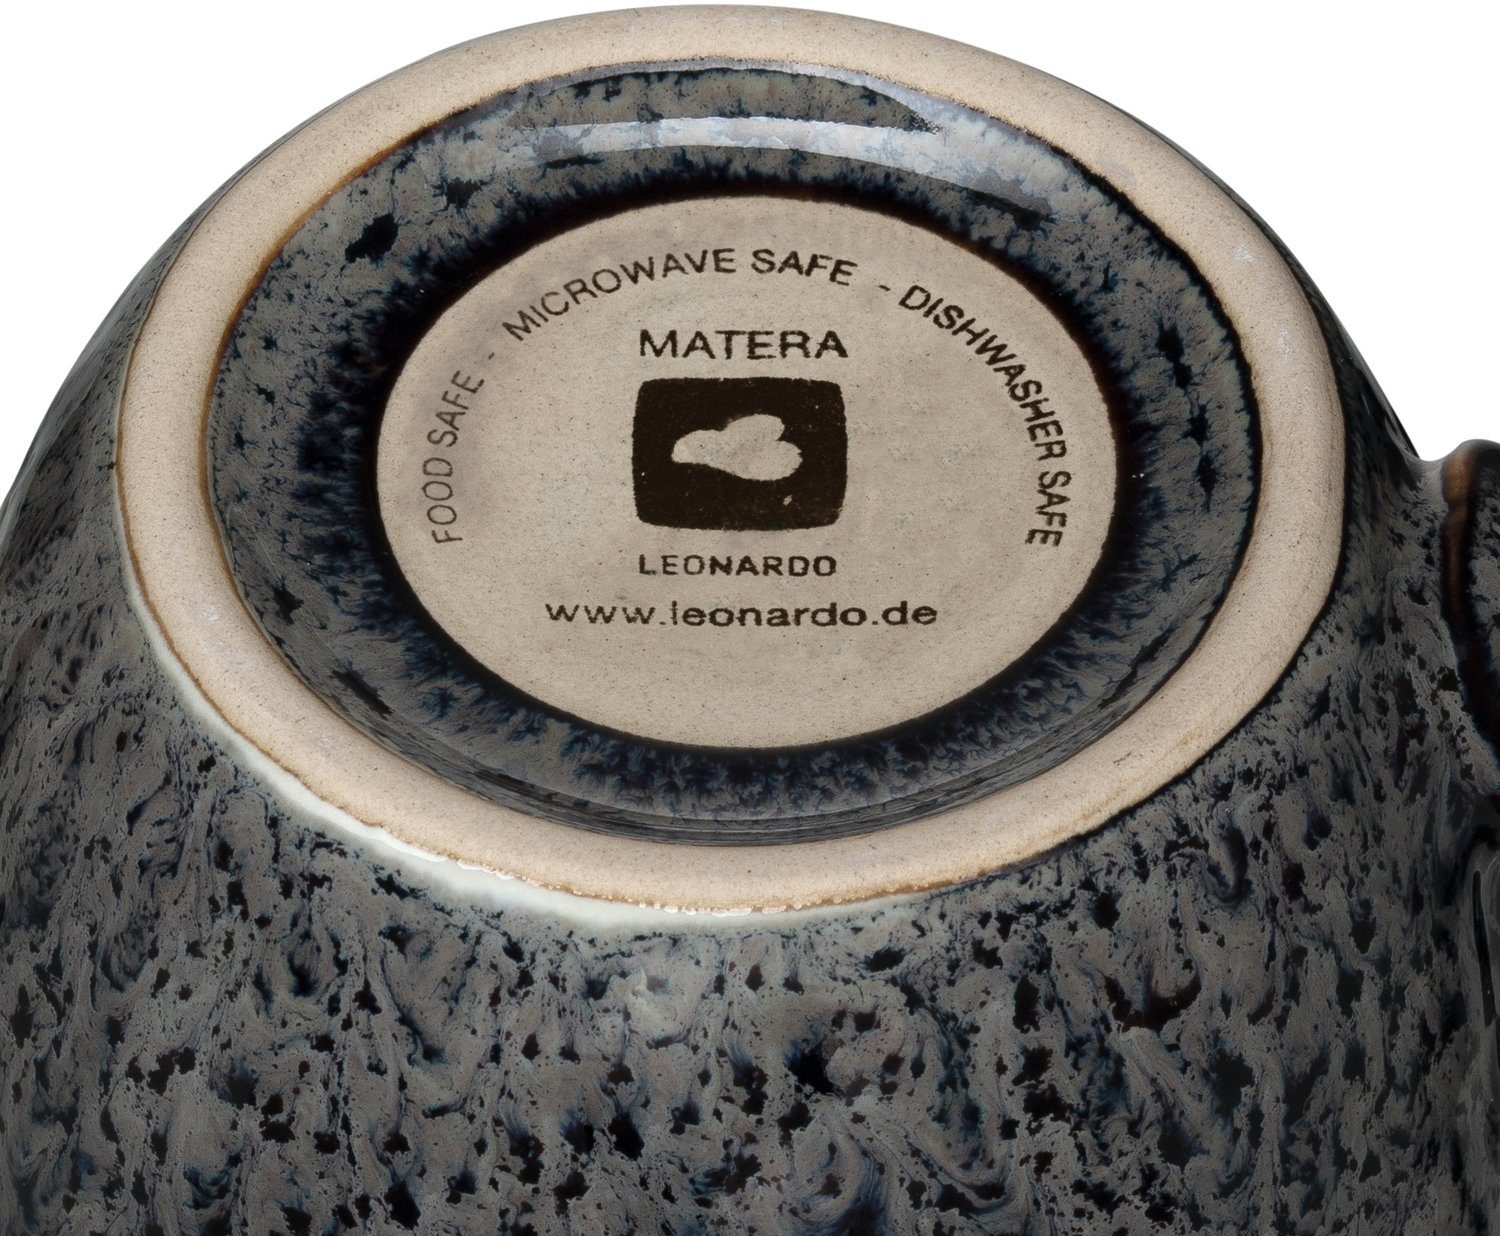 6-teilig LEONARDO 430 ml, Keramik, Becher anthrazit Matera,